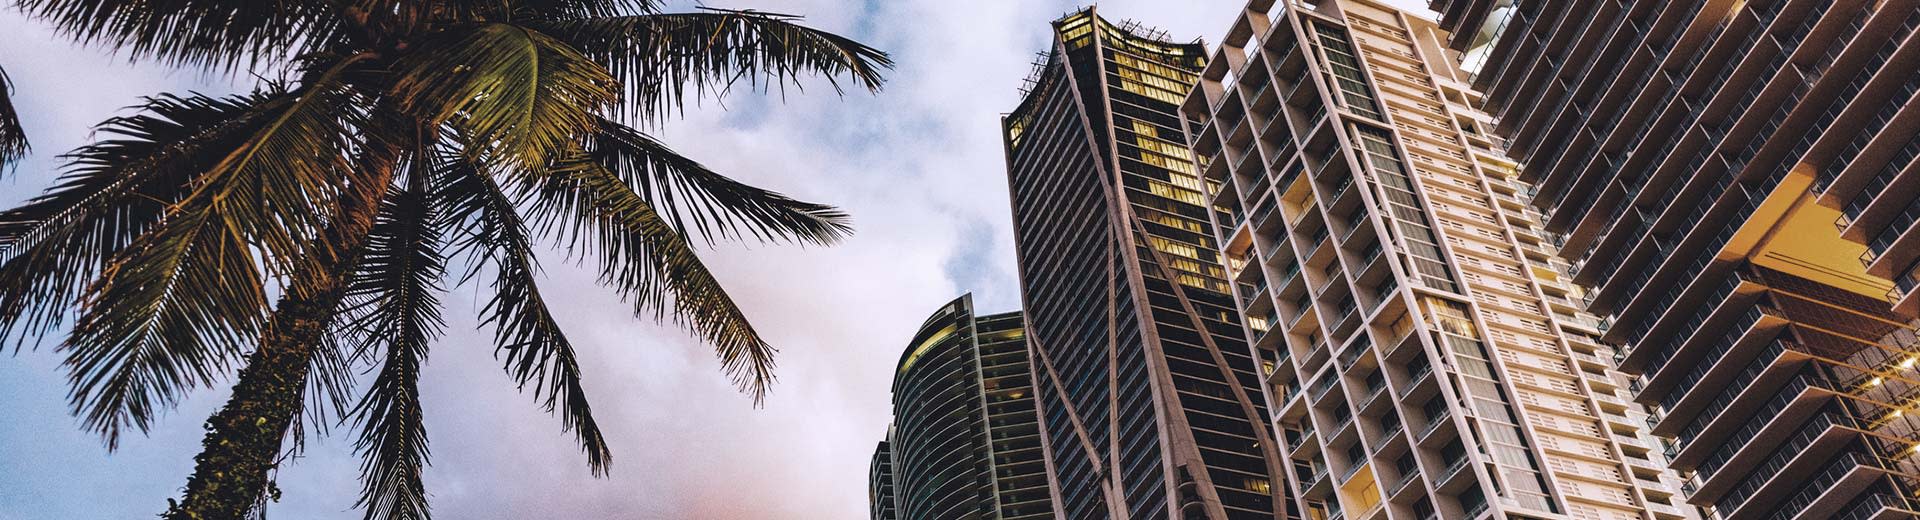 Palmes y rascacielos en exhibición en Miami.